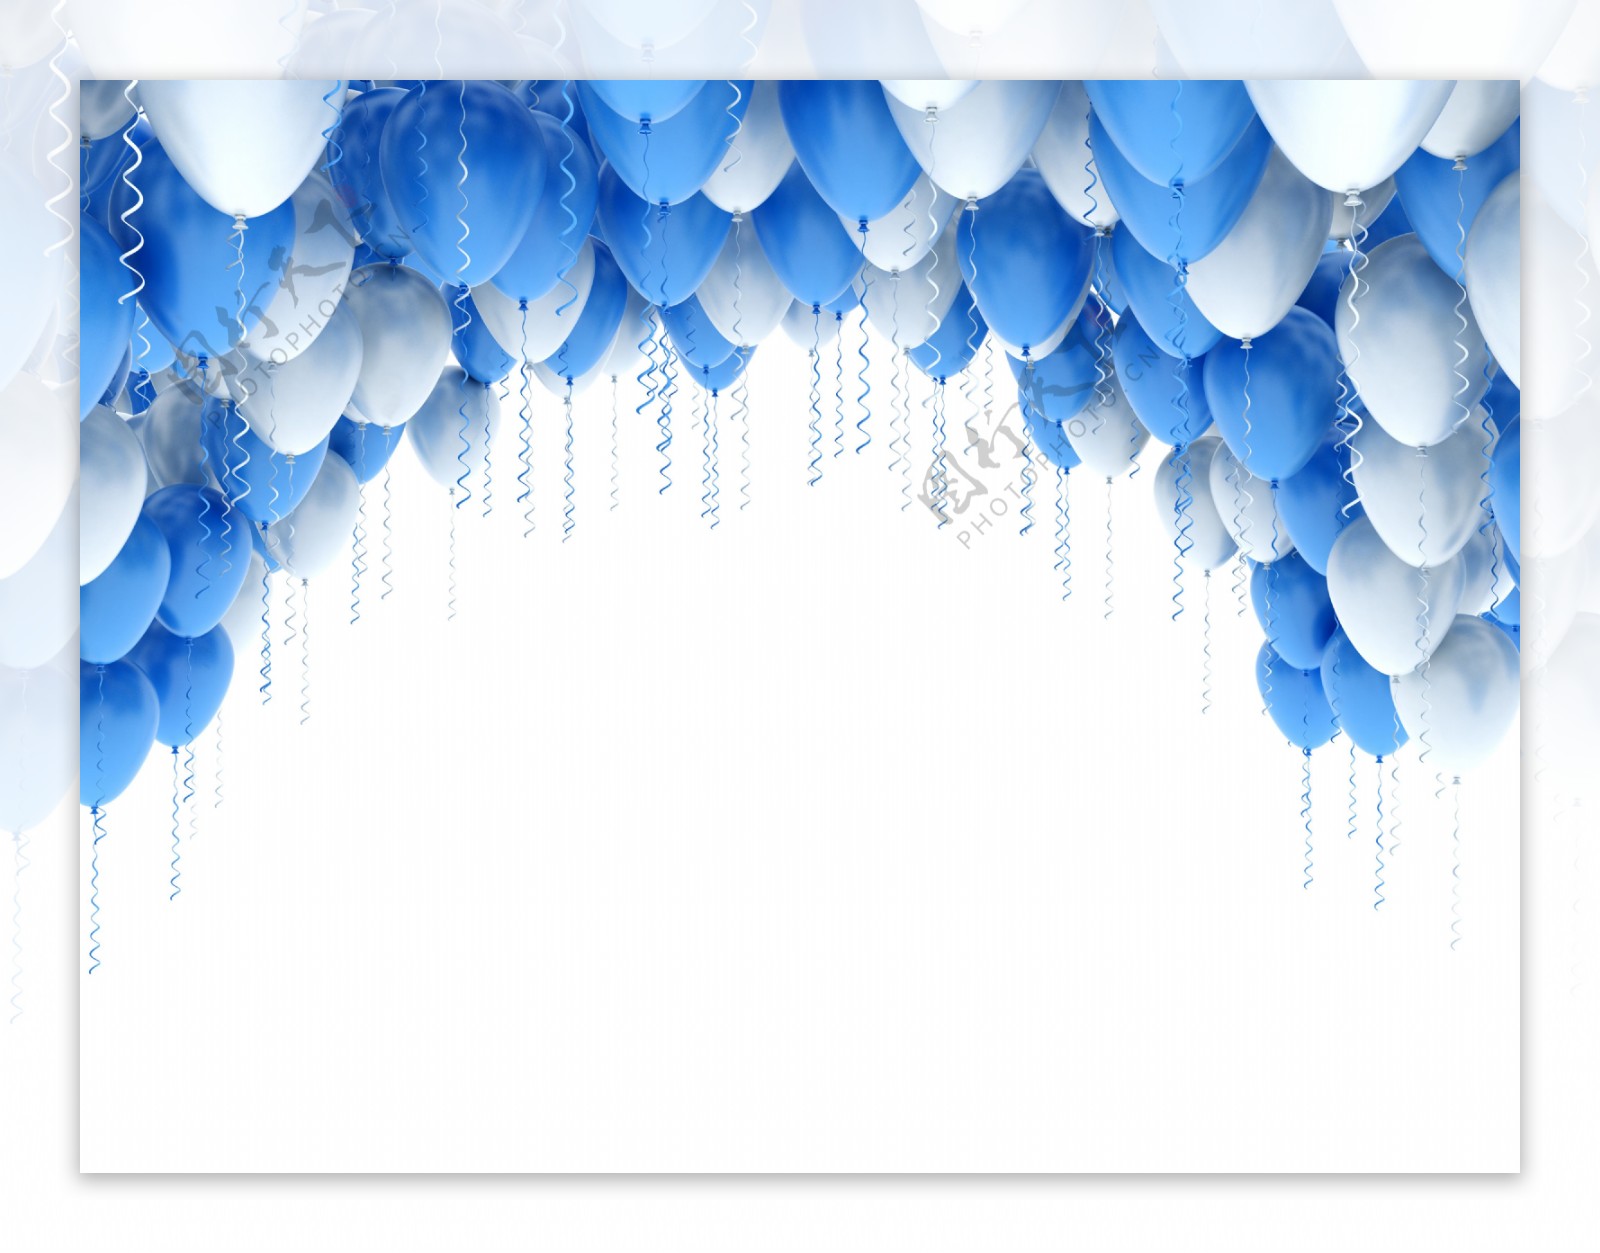 蓝色与白色气球组成的拱门高清图片